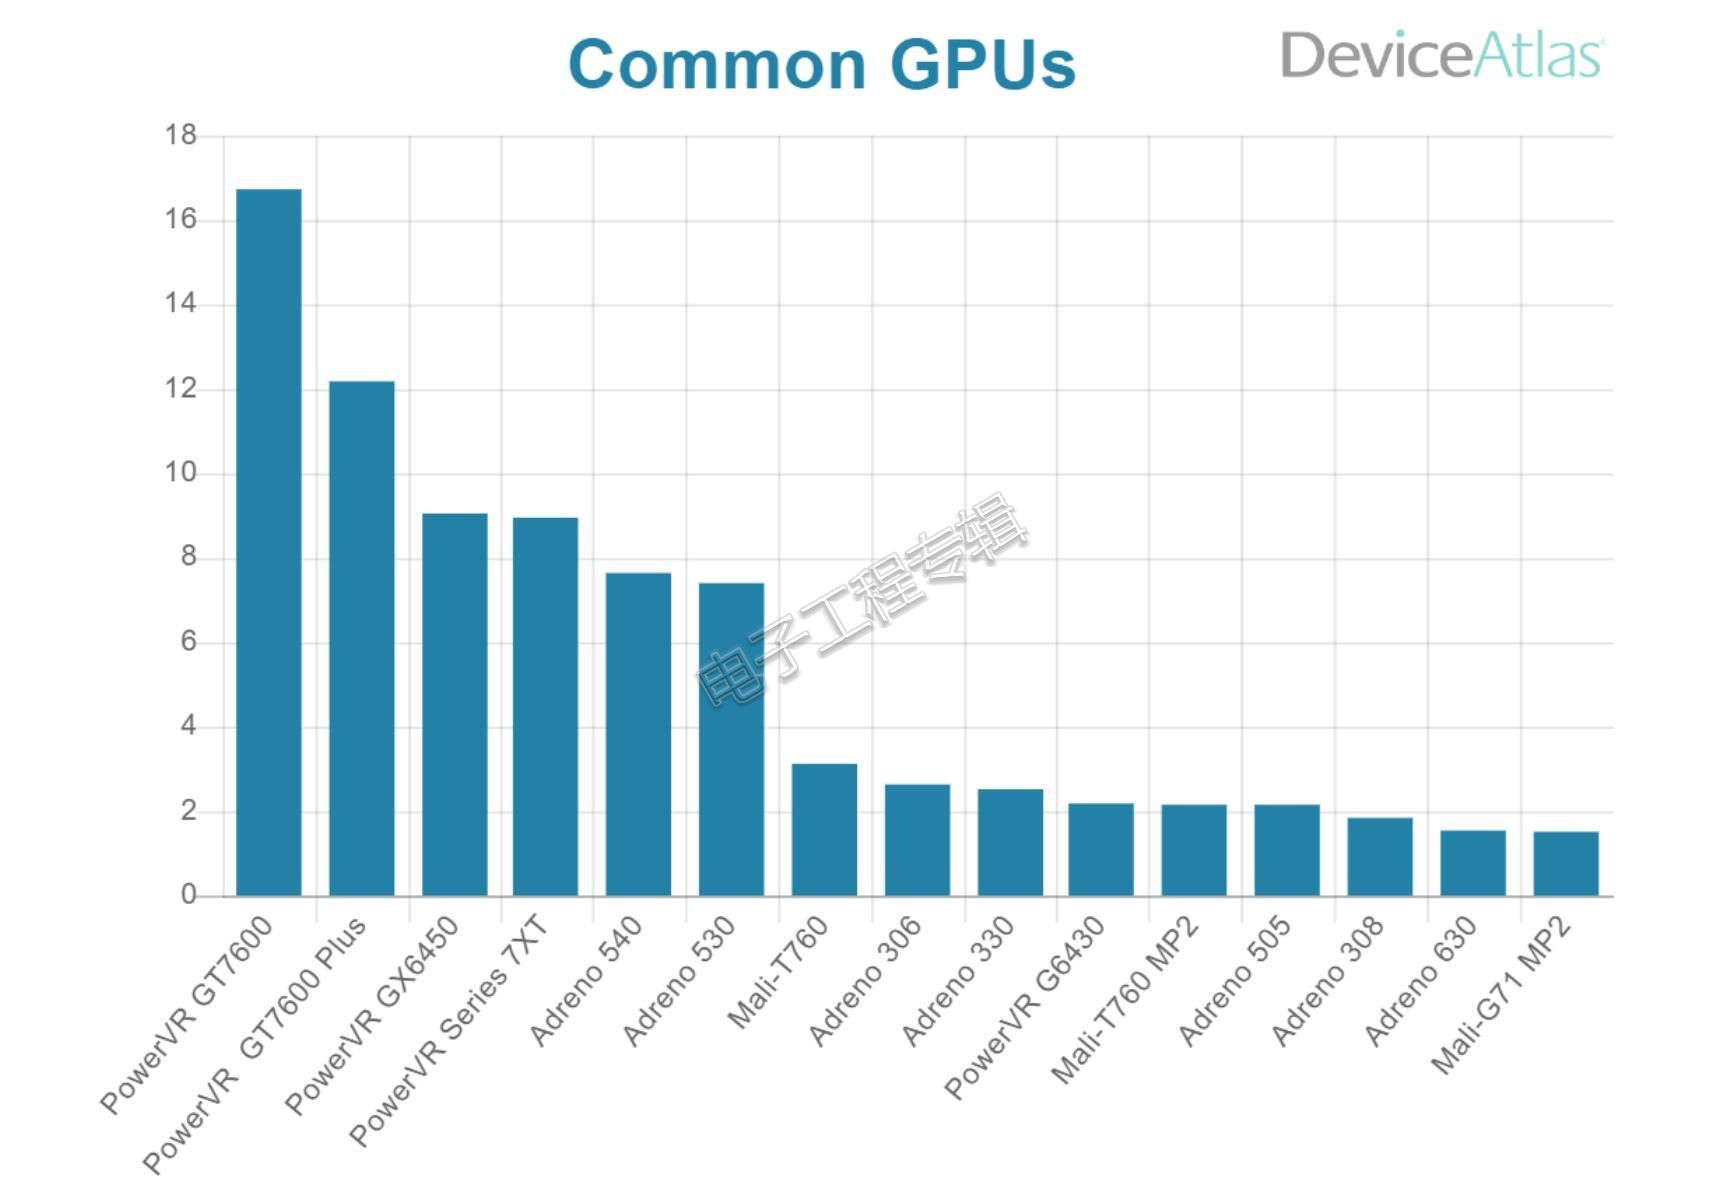 不同GPU产品的市场份额